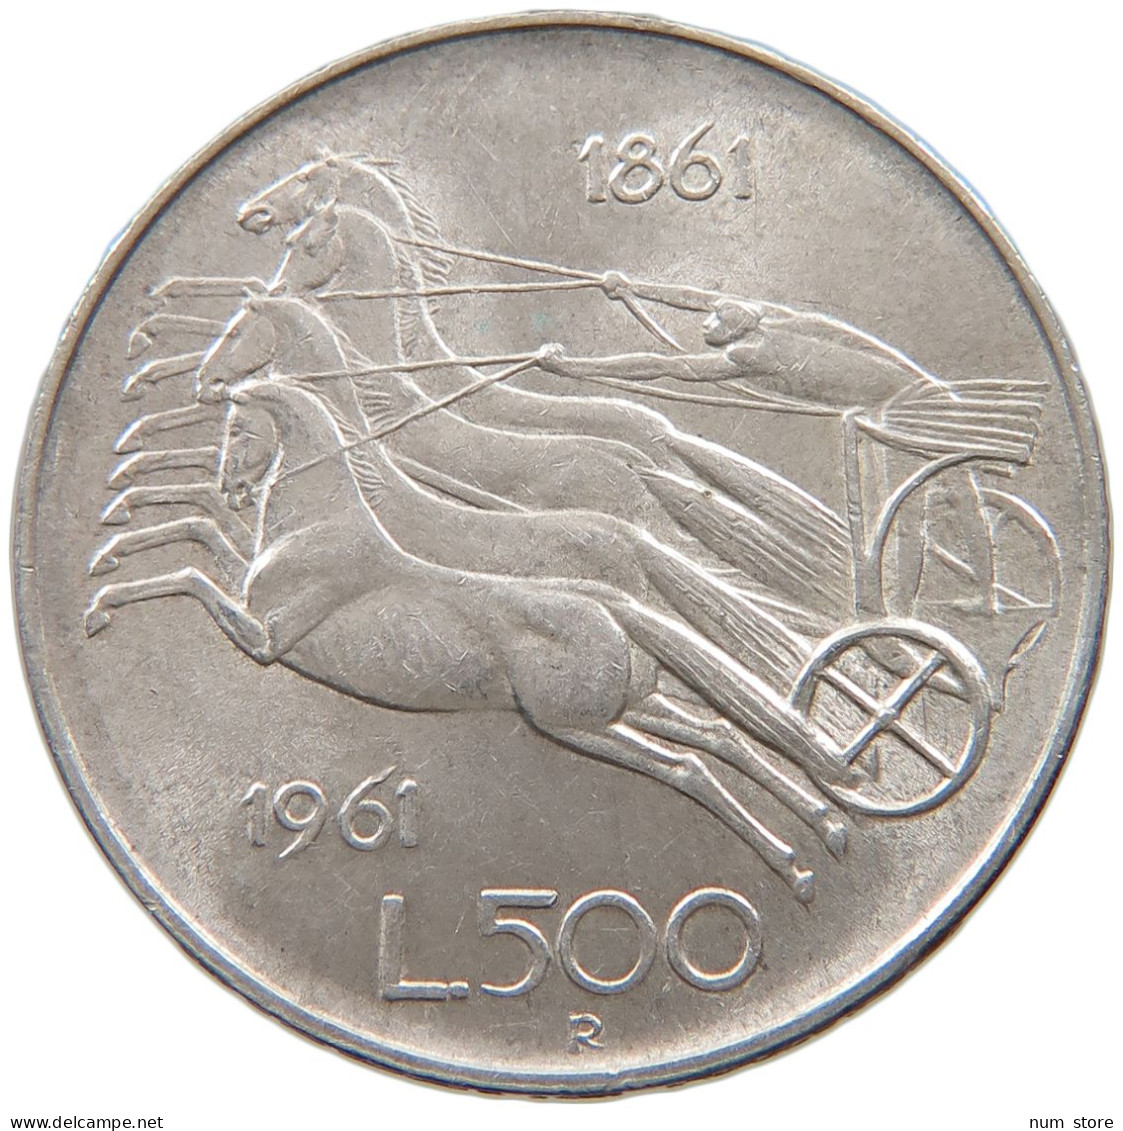 ITALY 500 LIRE 1961  #a020 0181 - 500 Lire